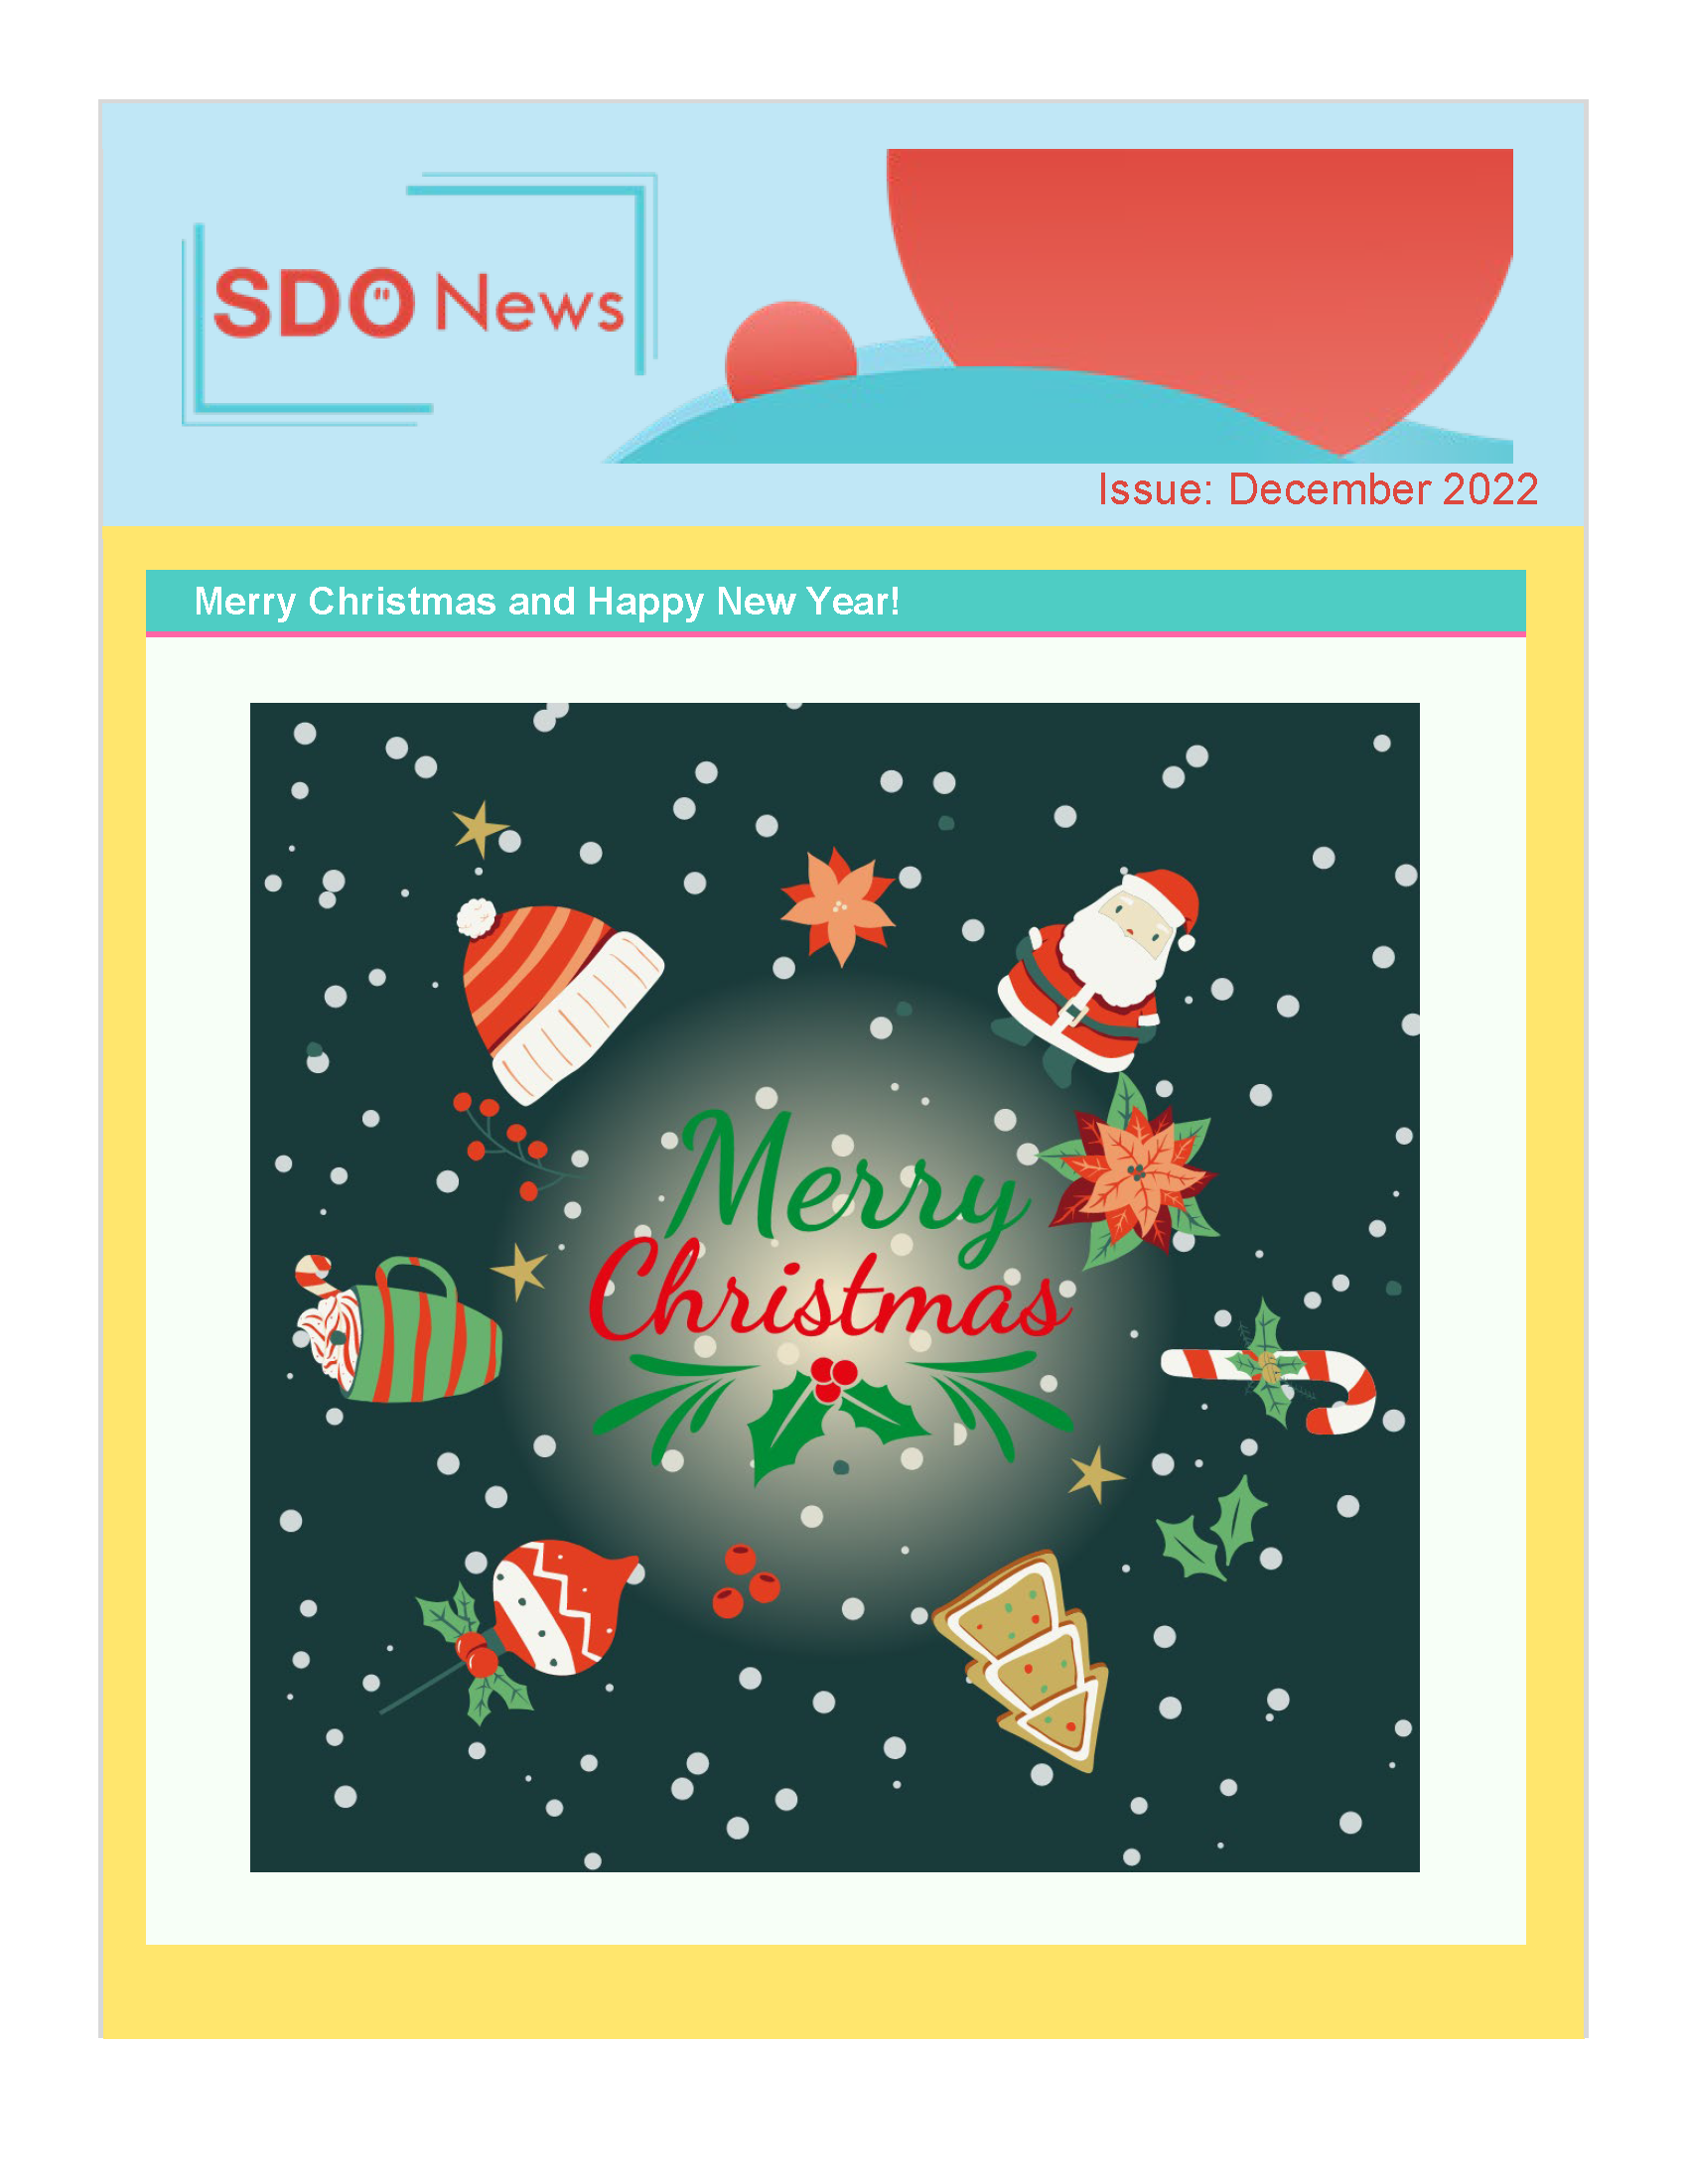 SDO New Dec issue